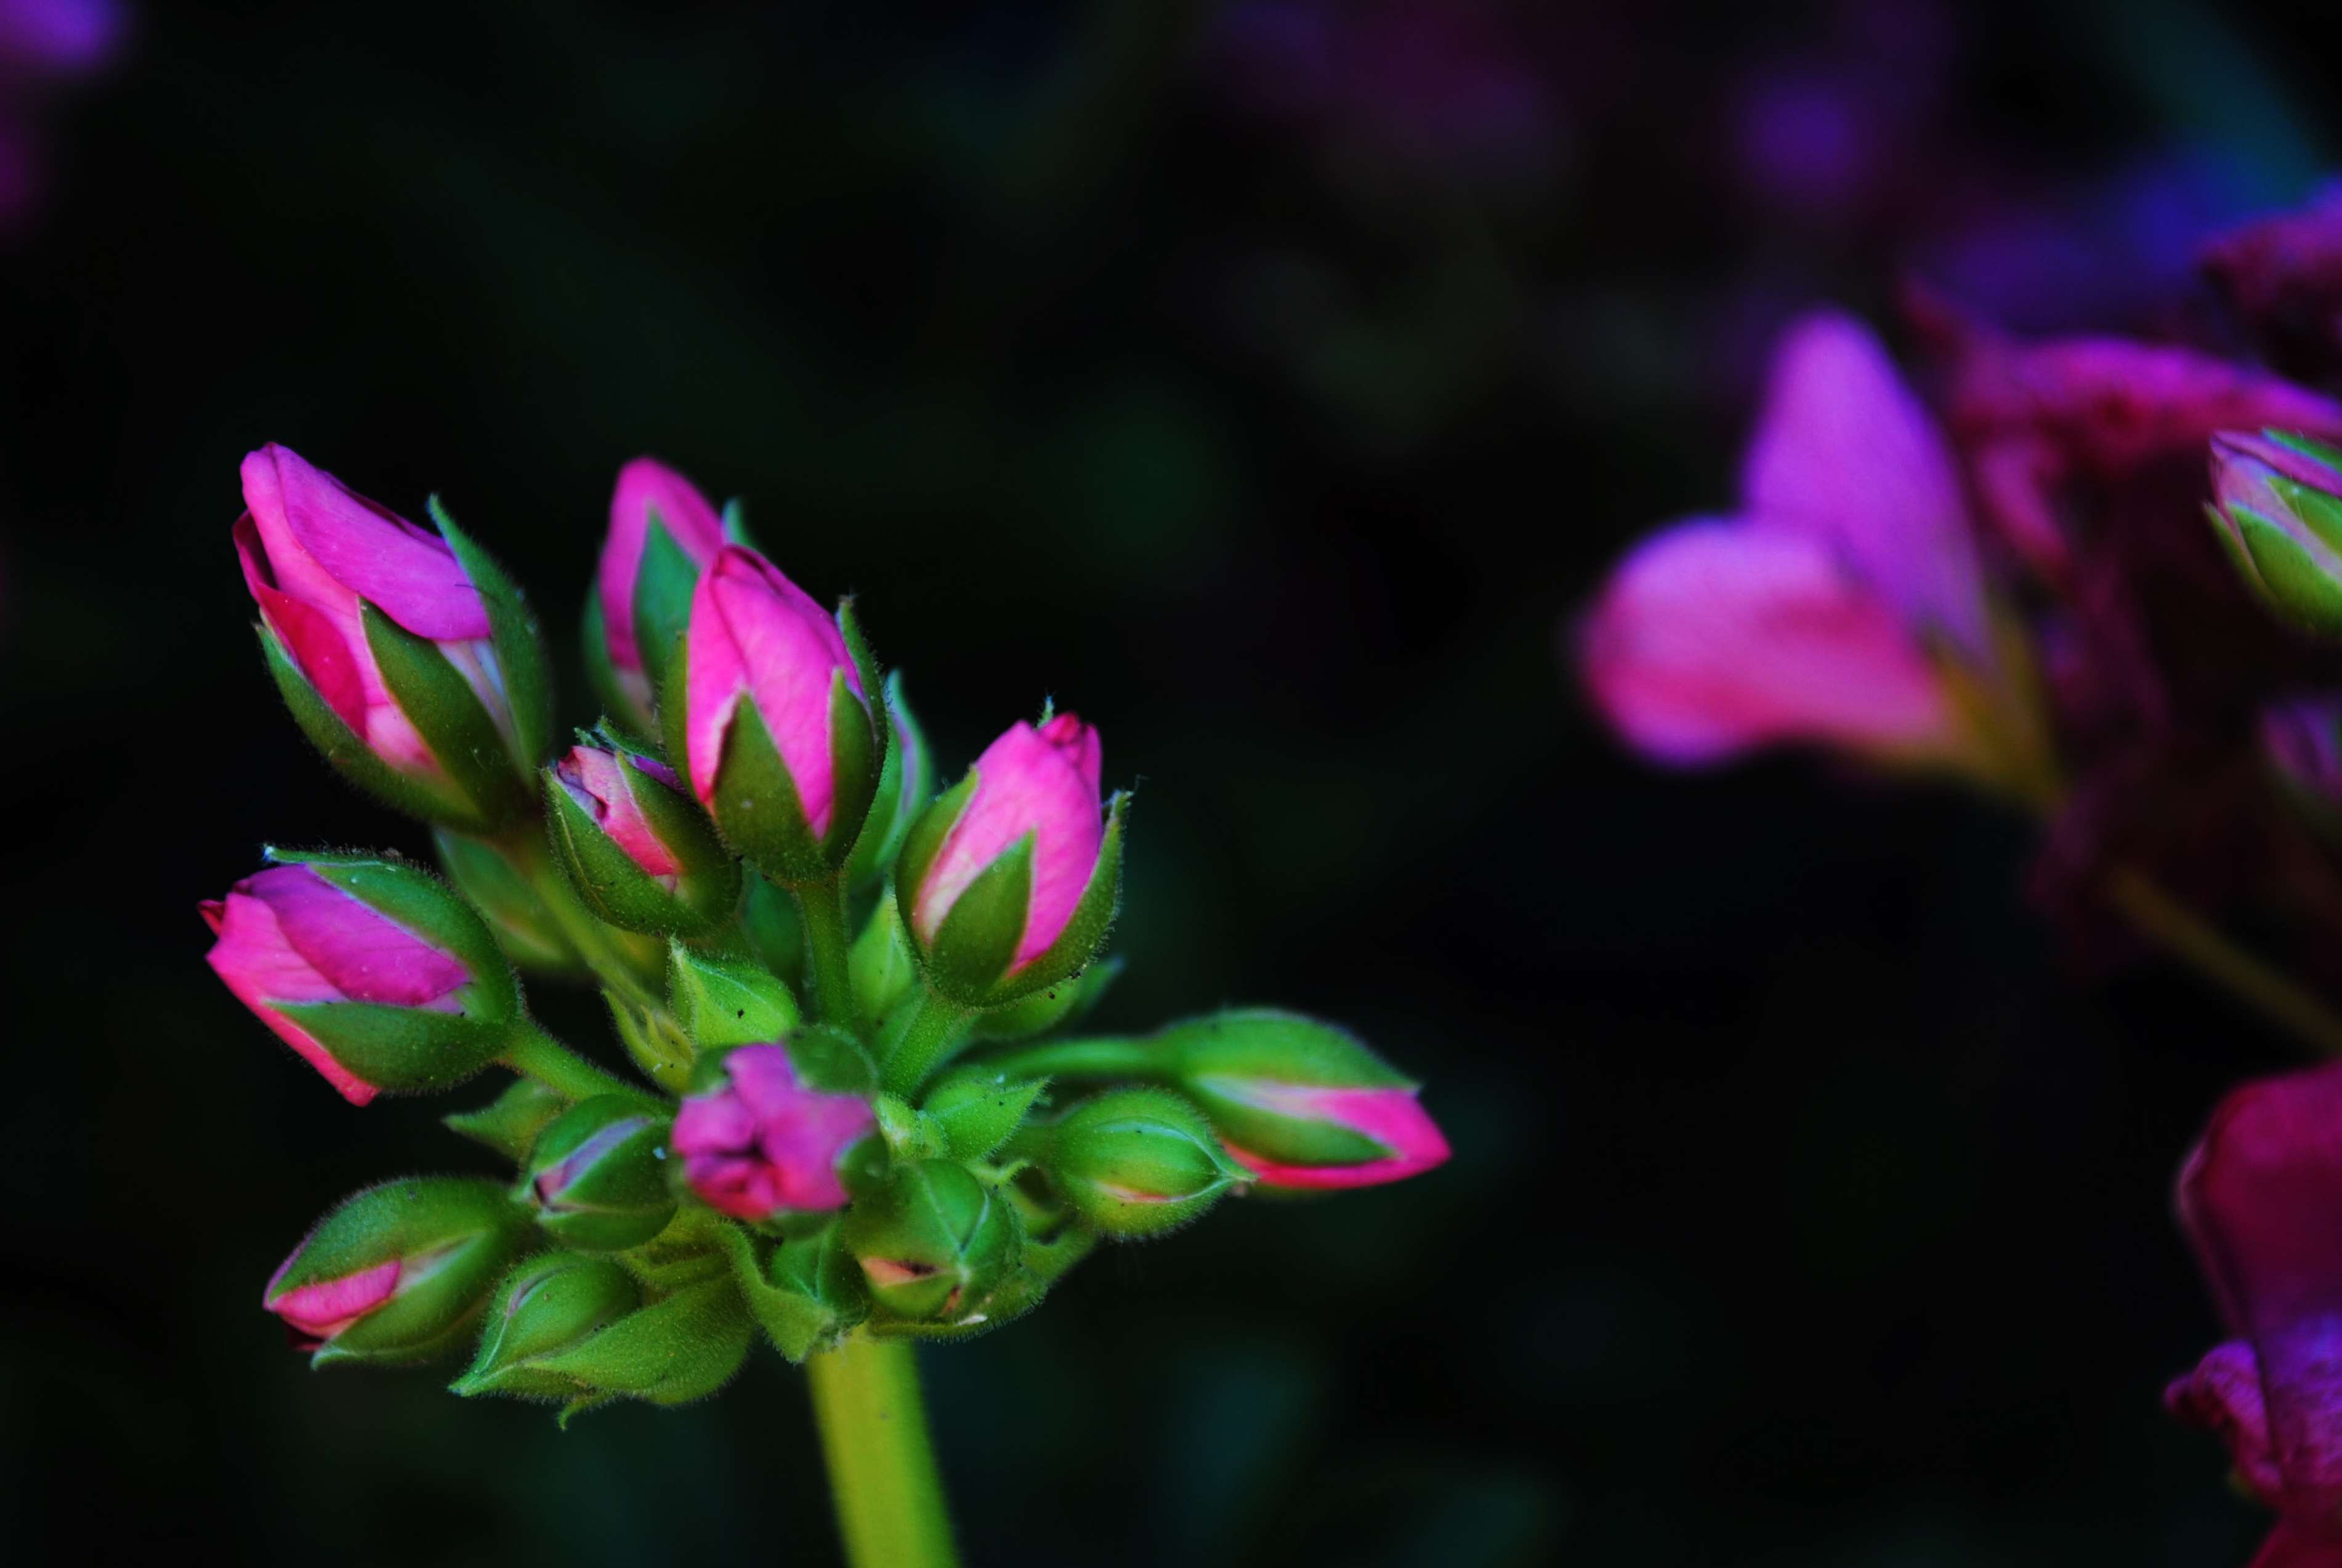 Tổng hợp những hình ảnh đẹp nhất về nụ hoa - [Kích thước hình ảnh: 3803x2546 px]